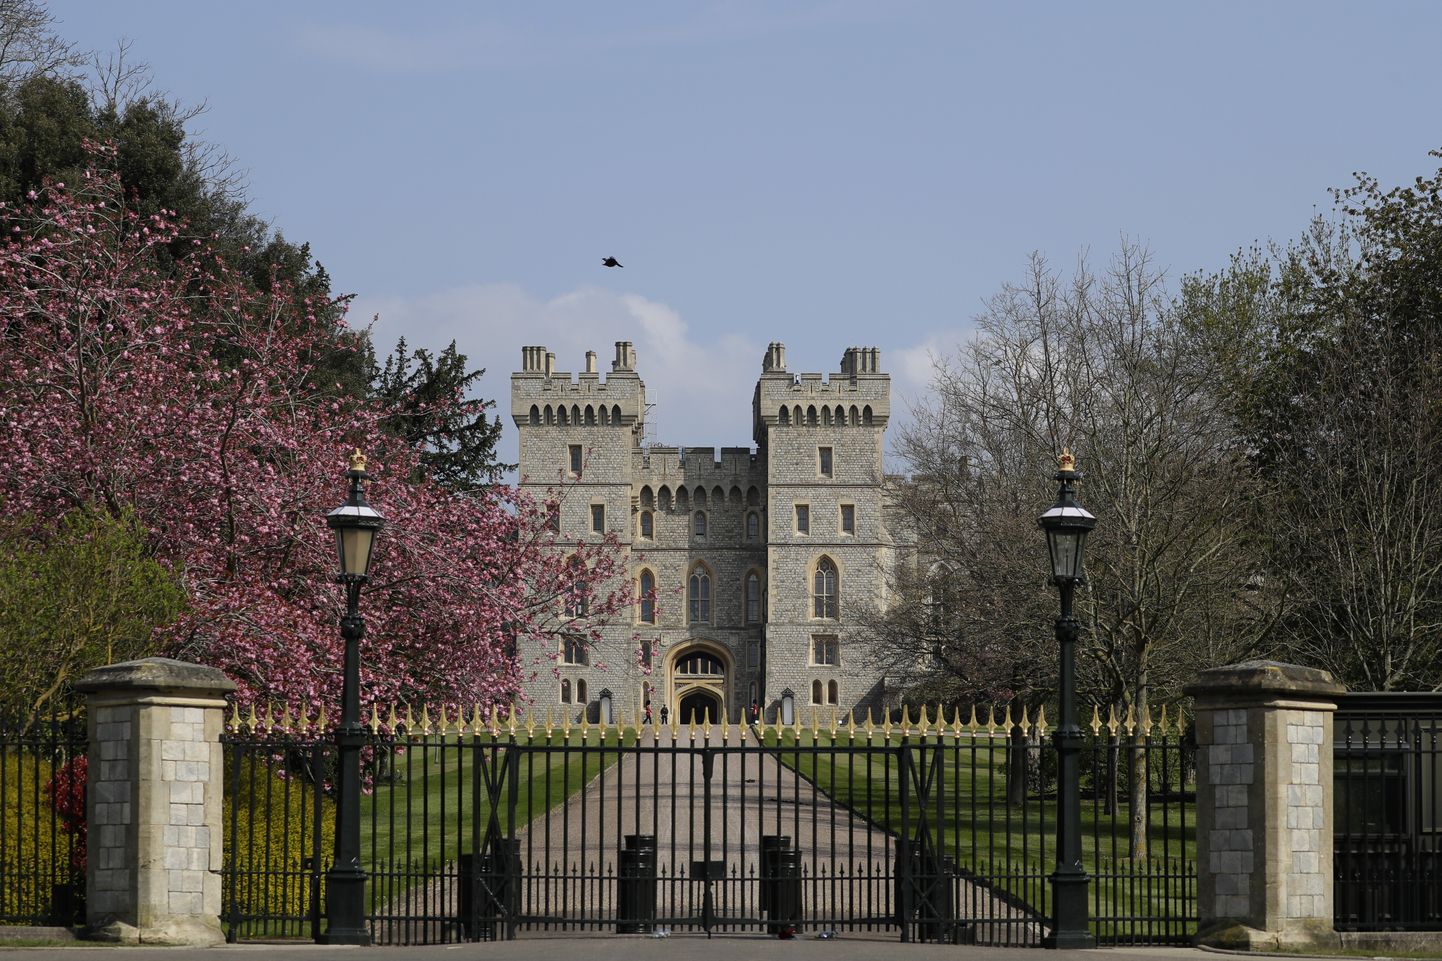 Windsori loss.